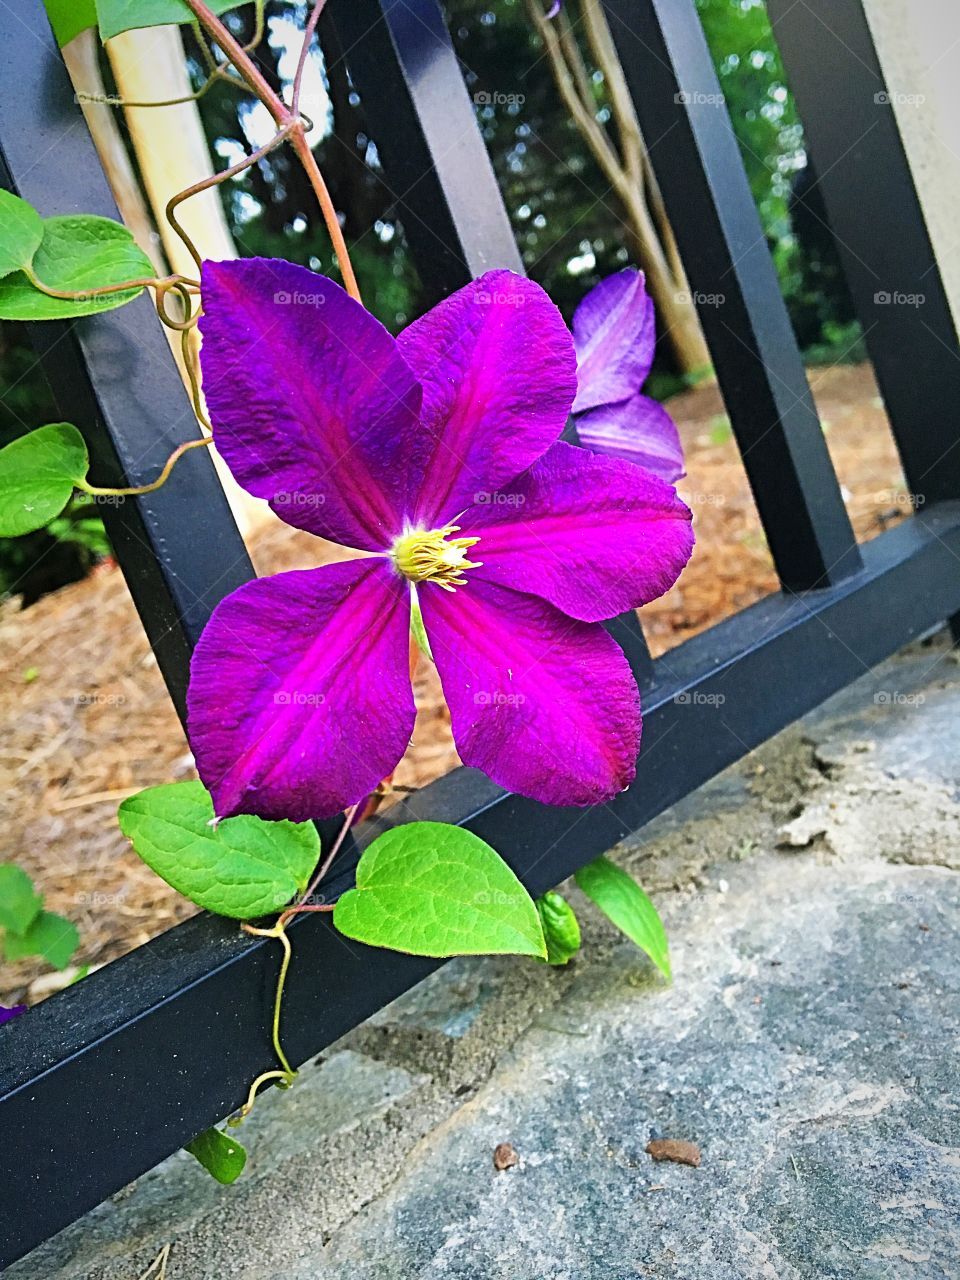 Cute purple flower by the neighborhood entrance 